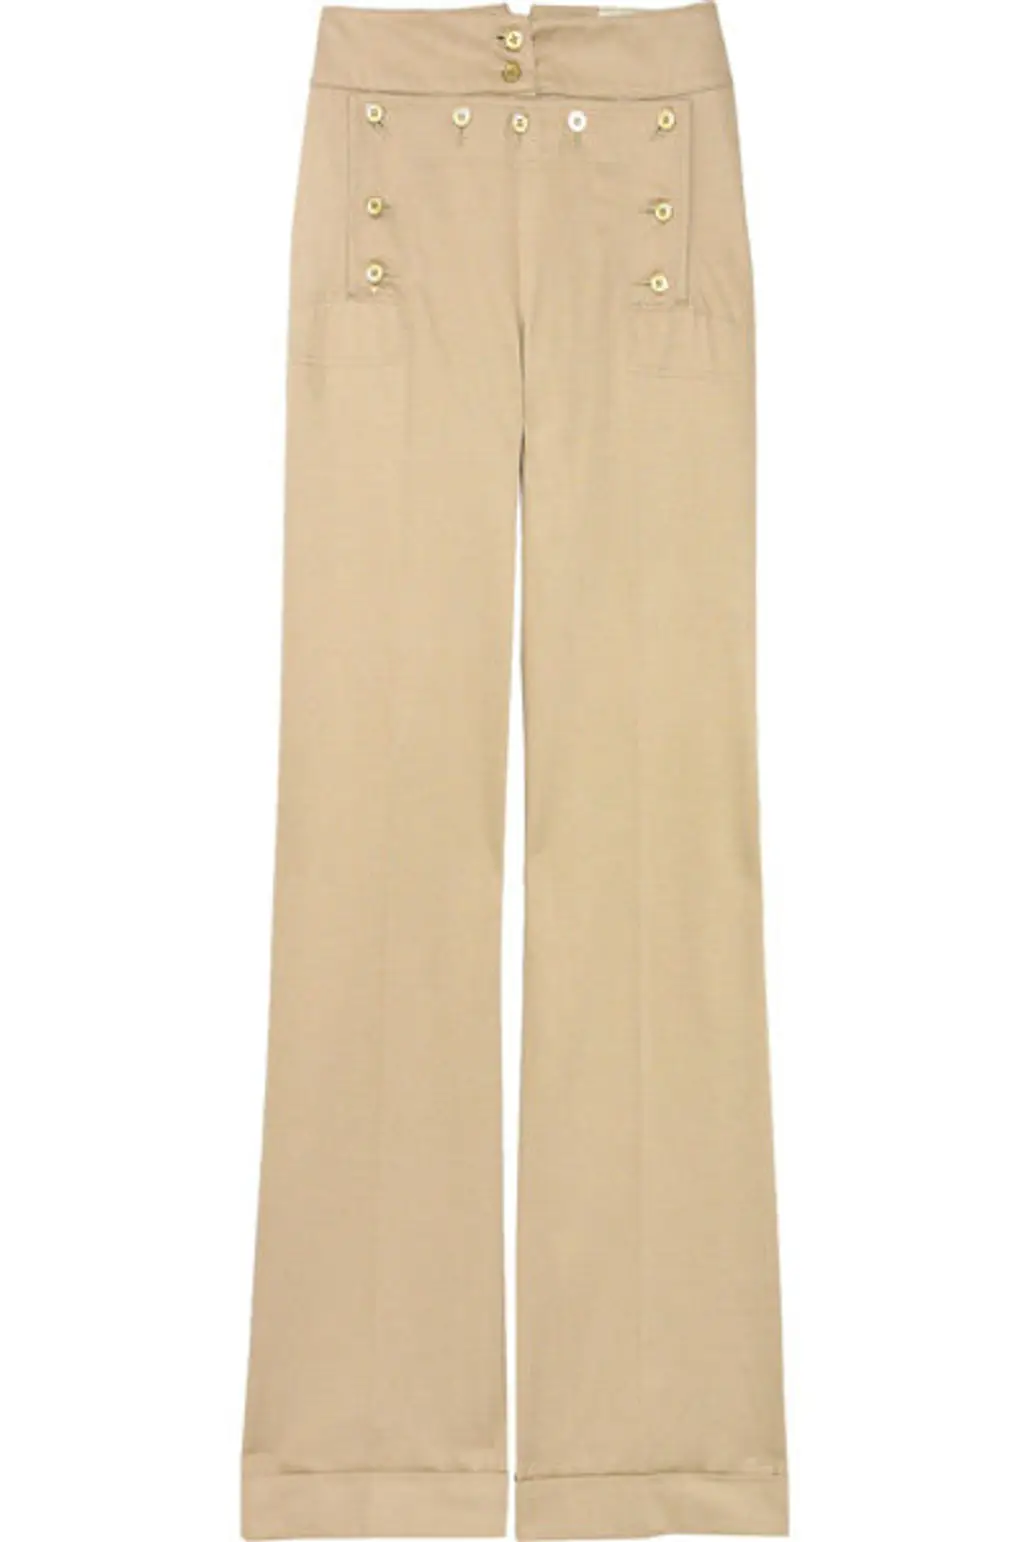 McQ Cotton Sailor Pants